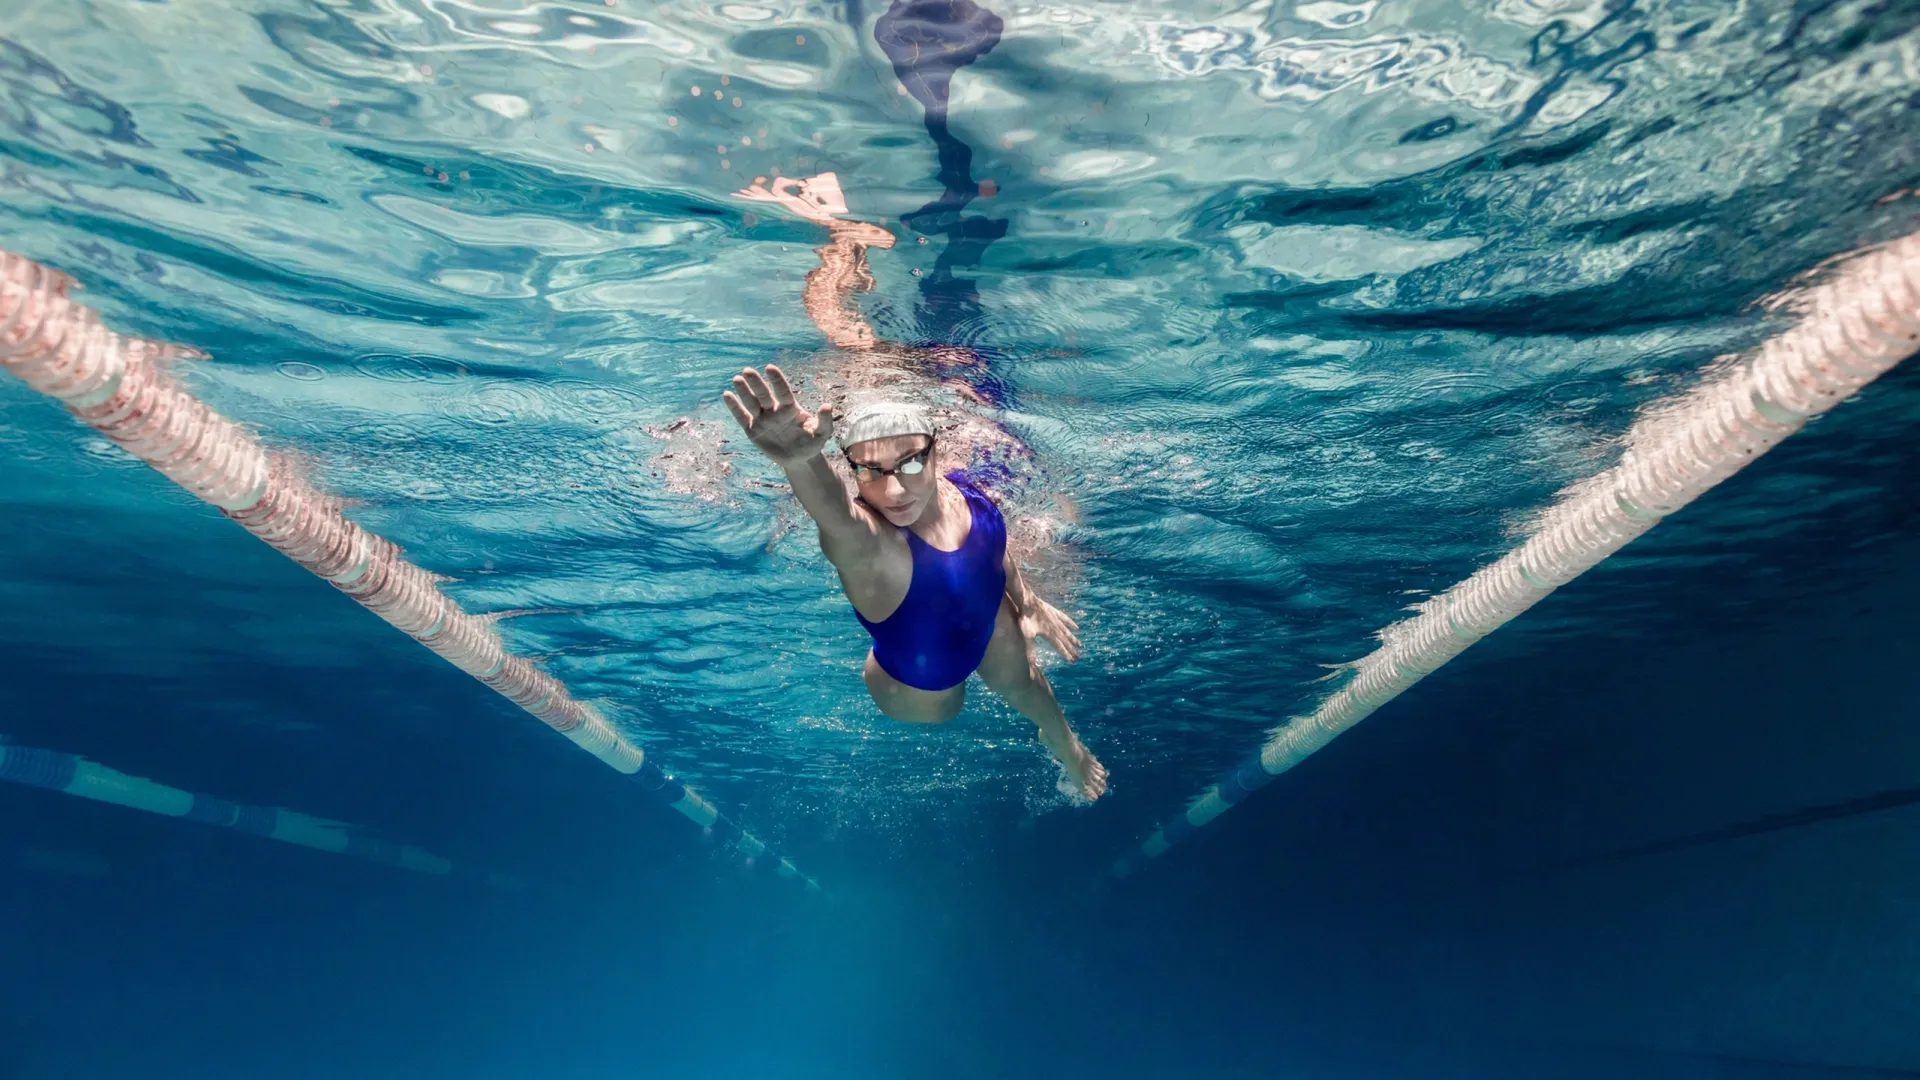 Плавание стало восьмым видом спорт в программе Арктических игр. Фото: LightField Studios / Shutterstock / Fotodom